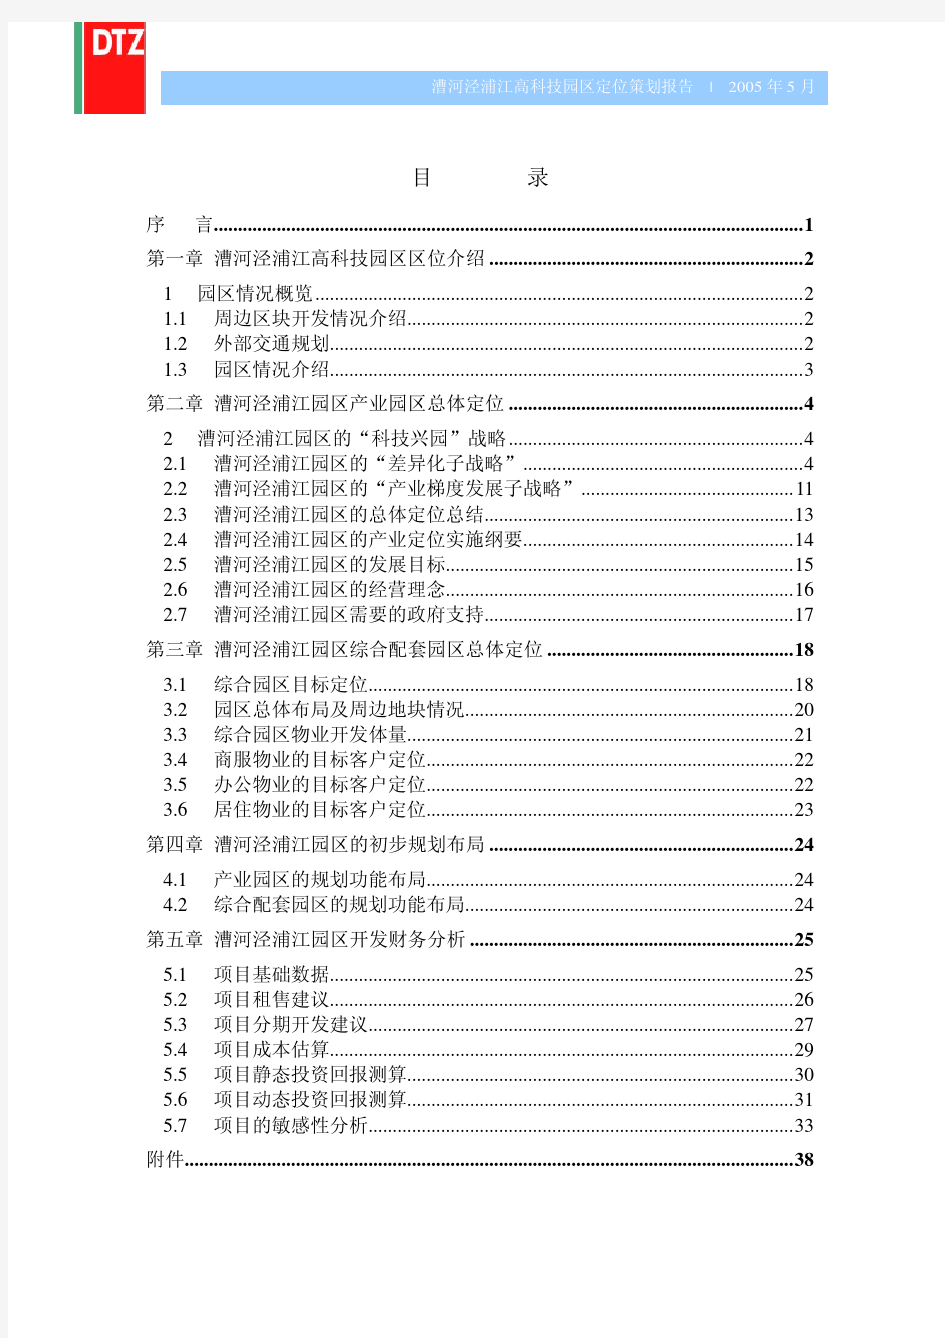 戴德梁行漕河泾产业报告最终127425462